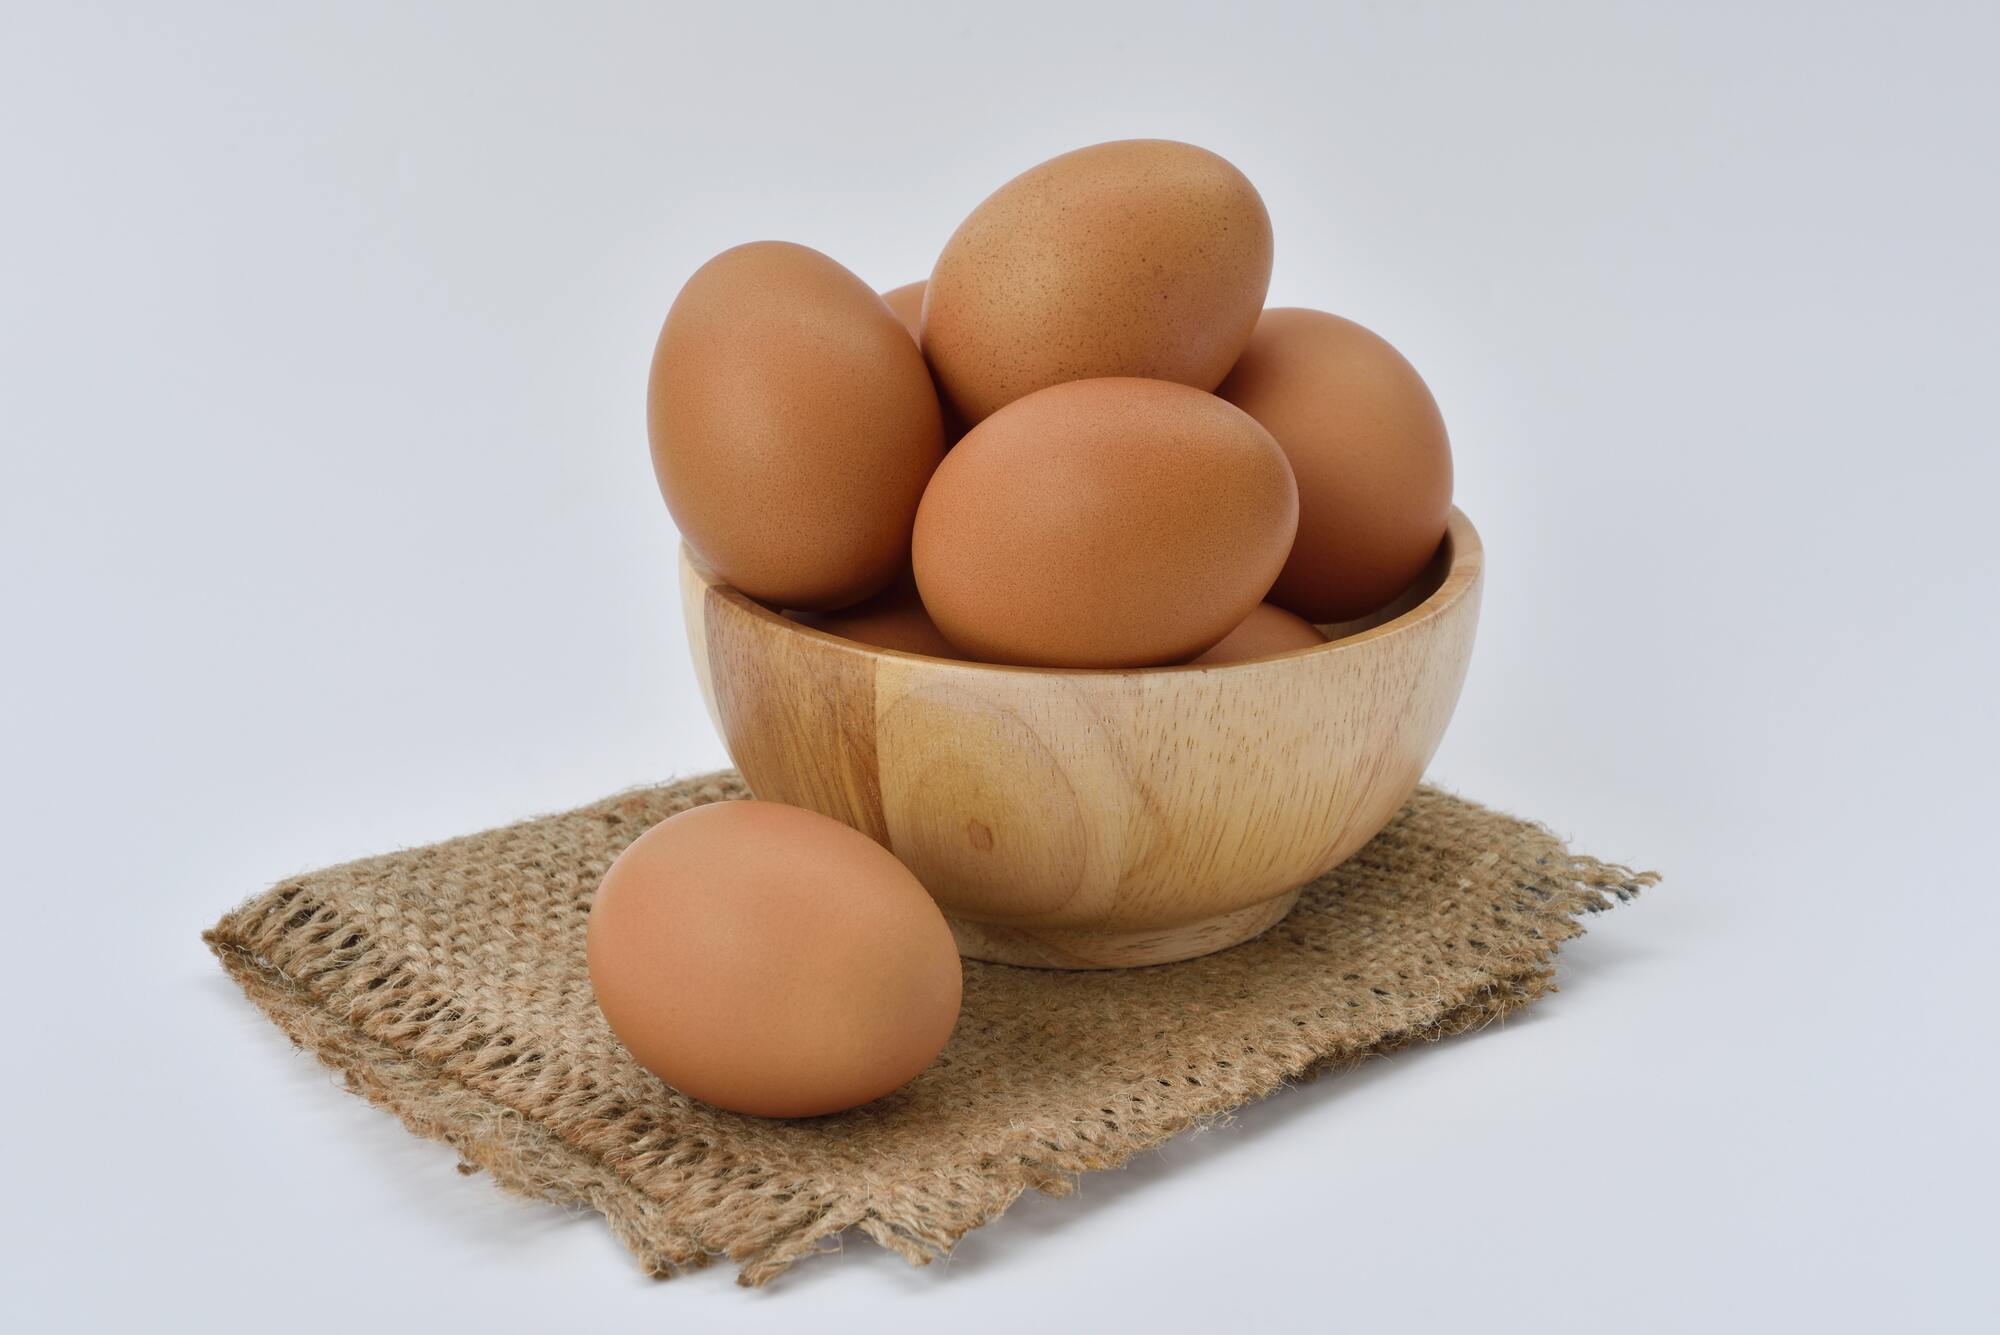 Як в жодному разі не можна готувати яйця